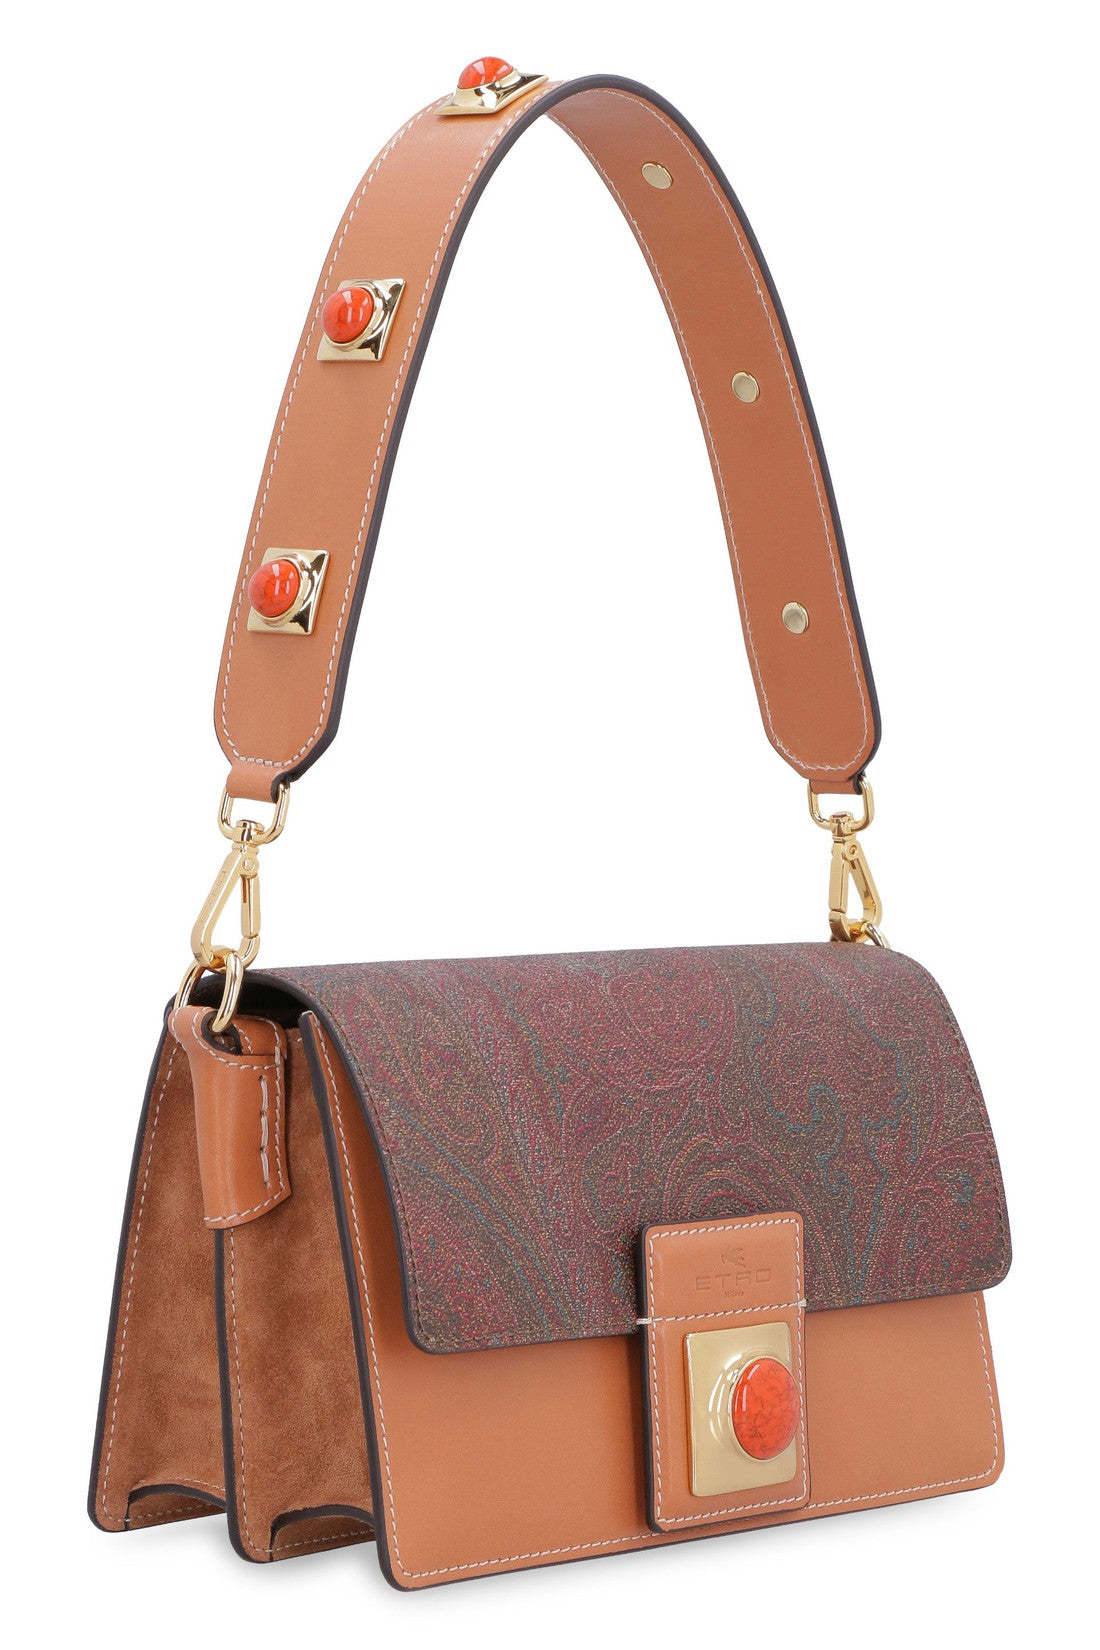 Etro-OUTLET-SALE-Crown Me handbag-ARCHIVIST